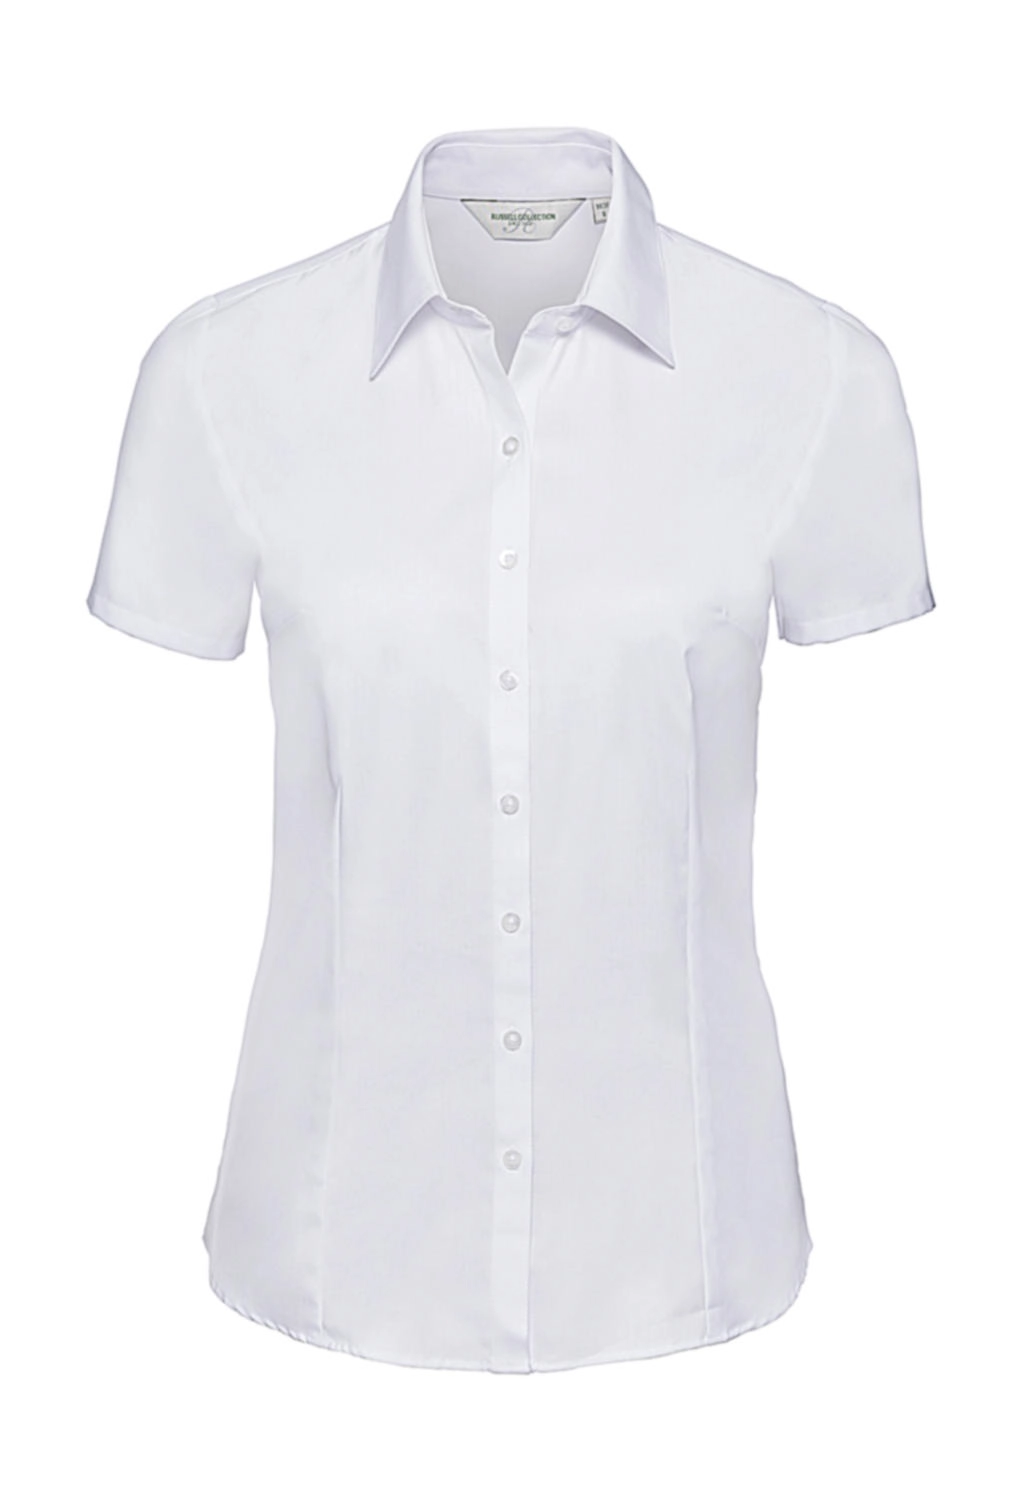 Ladies` Herringbone Shirt zum Besticken und Bedrucken in der Farbe White mit Ihren Logo, Schriftzug oder Motiv.